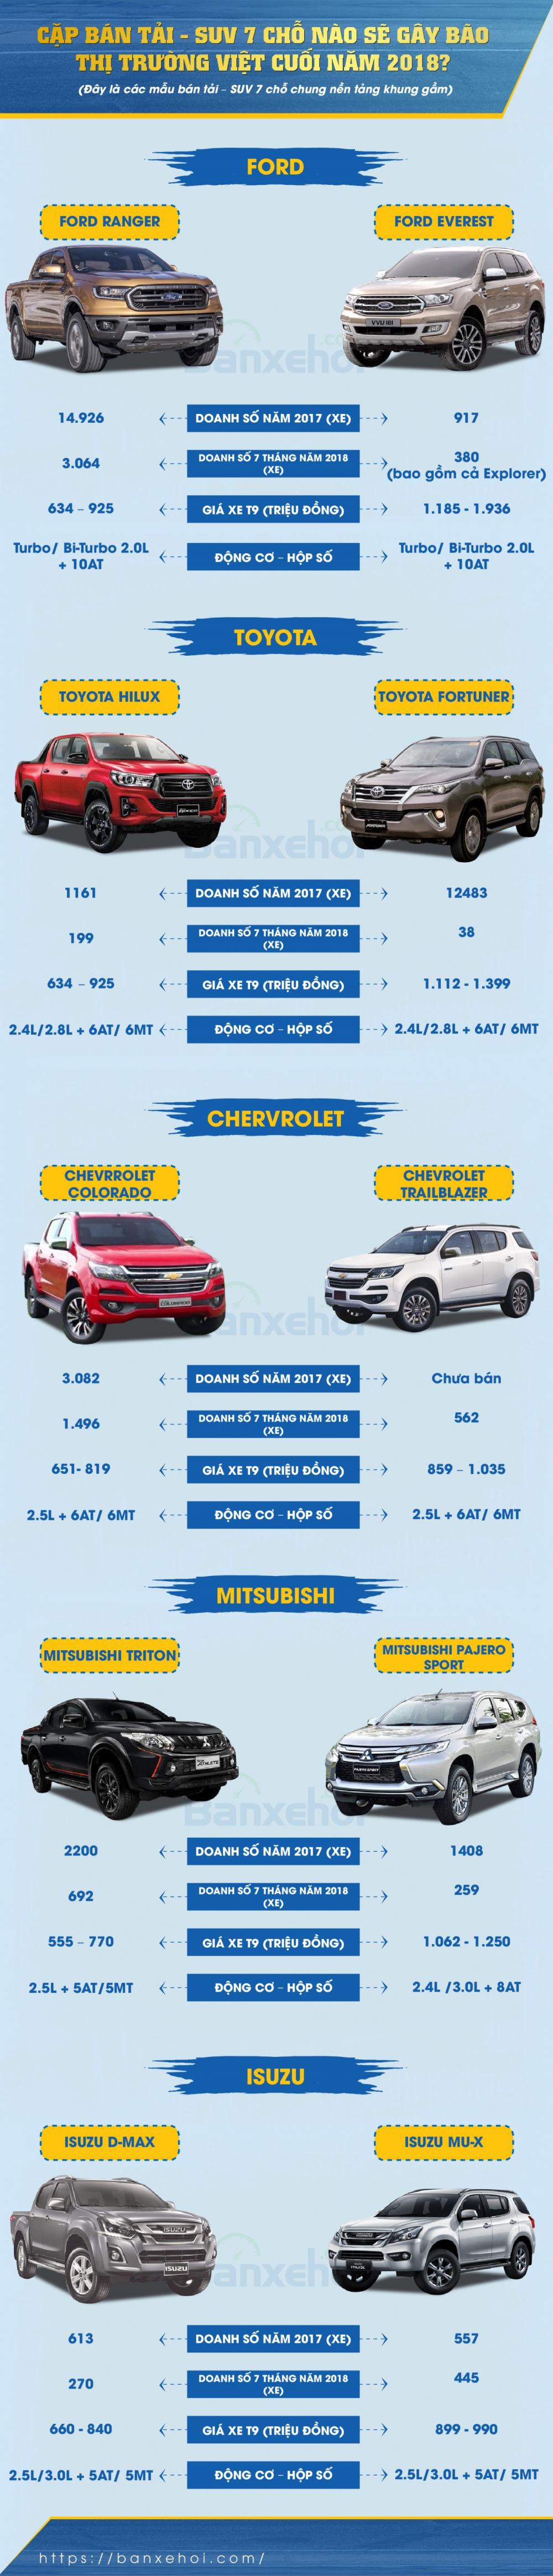 Cặp bán tải - SUV 7 chỗ nhập nào sẽ gây bão thị trường xe hơi Việt cuối năm 2018? 1